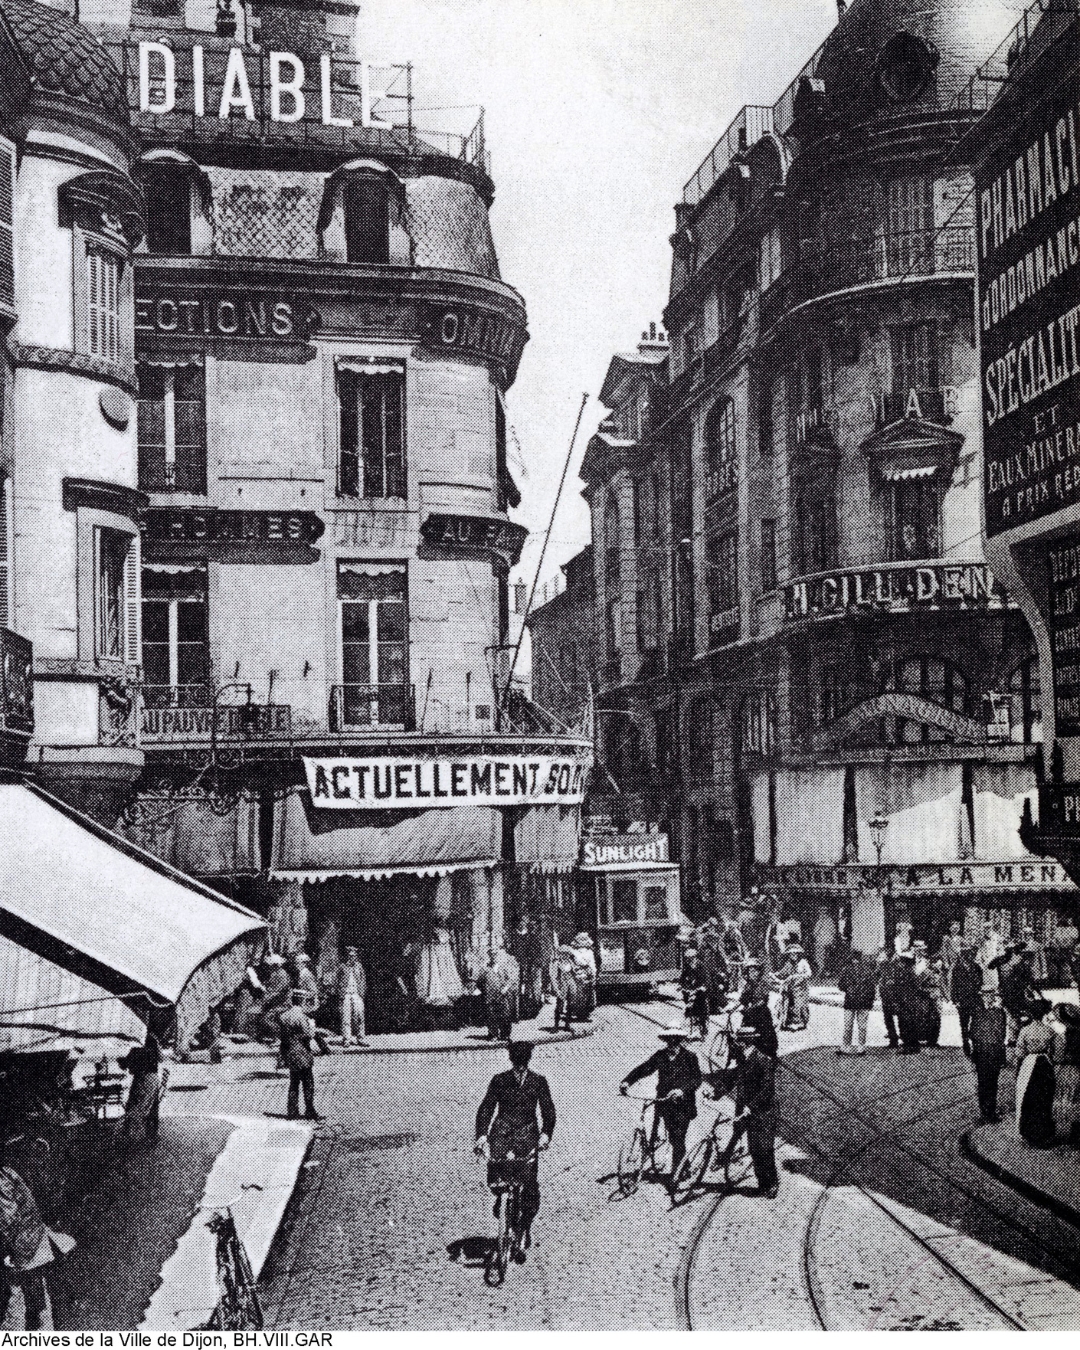 Le grand magasin Au Pauvre Diable en 1920